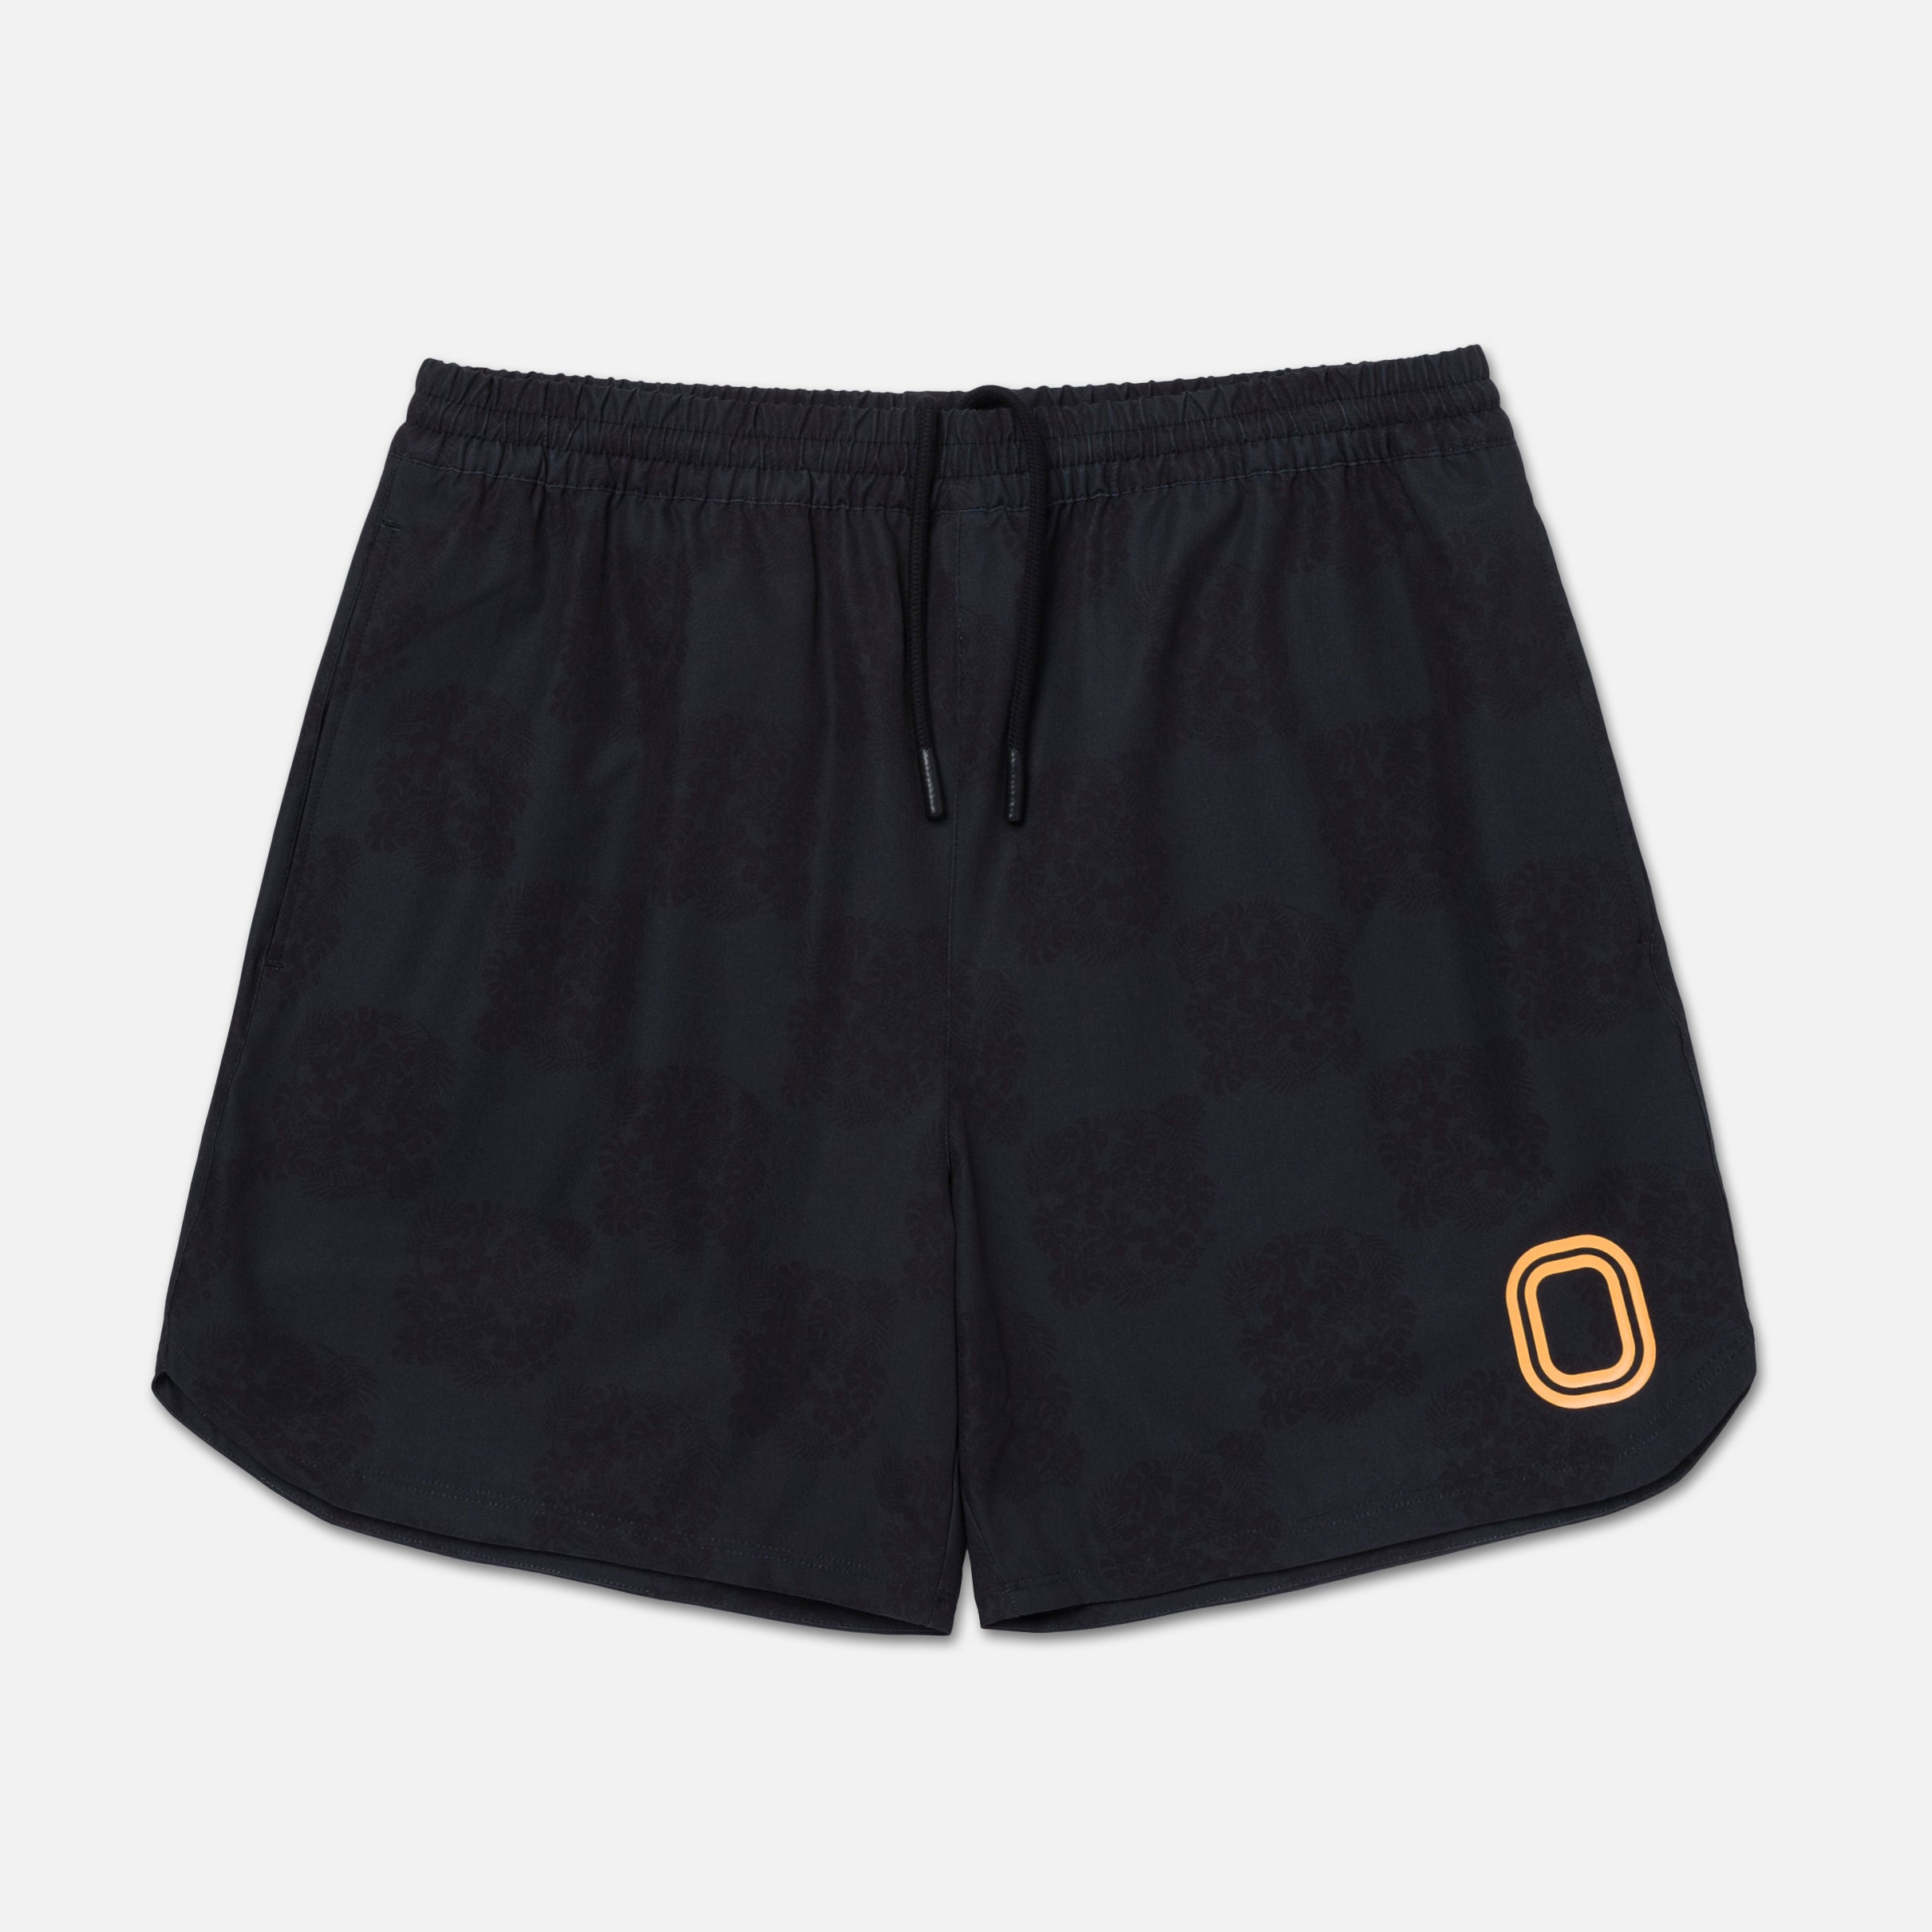 OT Mesh Shorts – OVERTIME